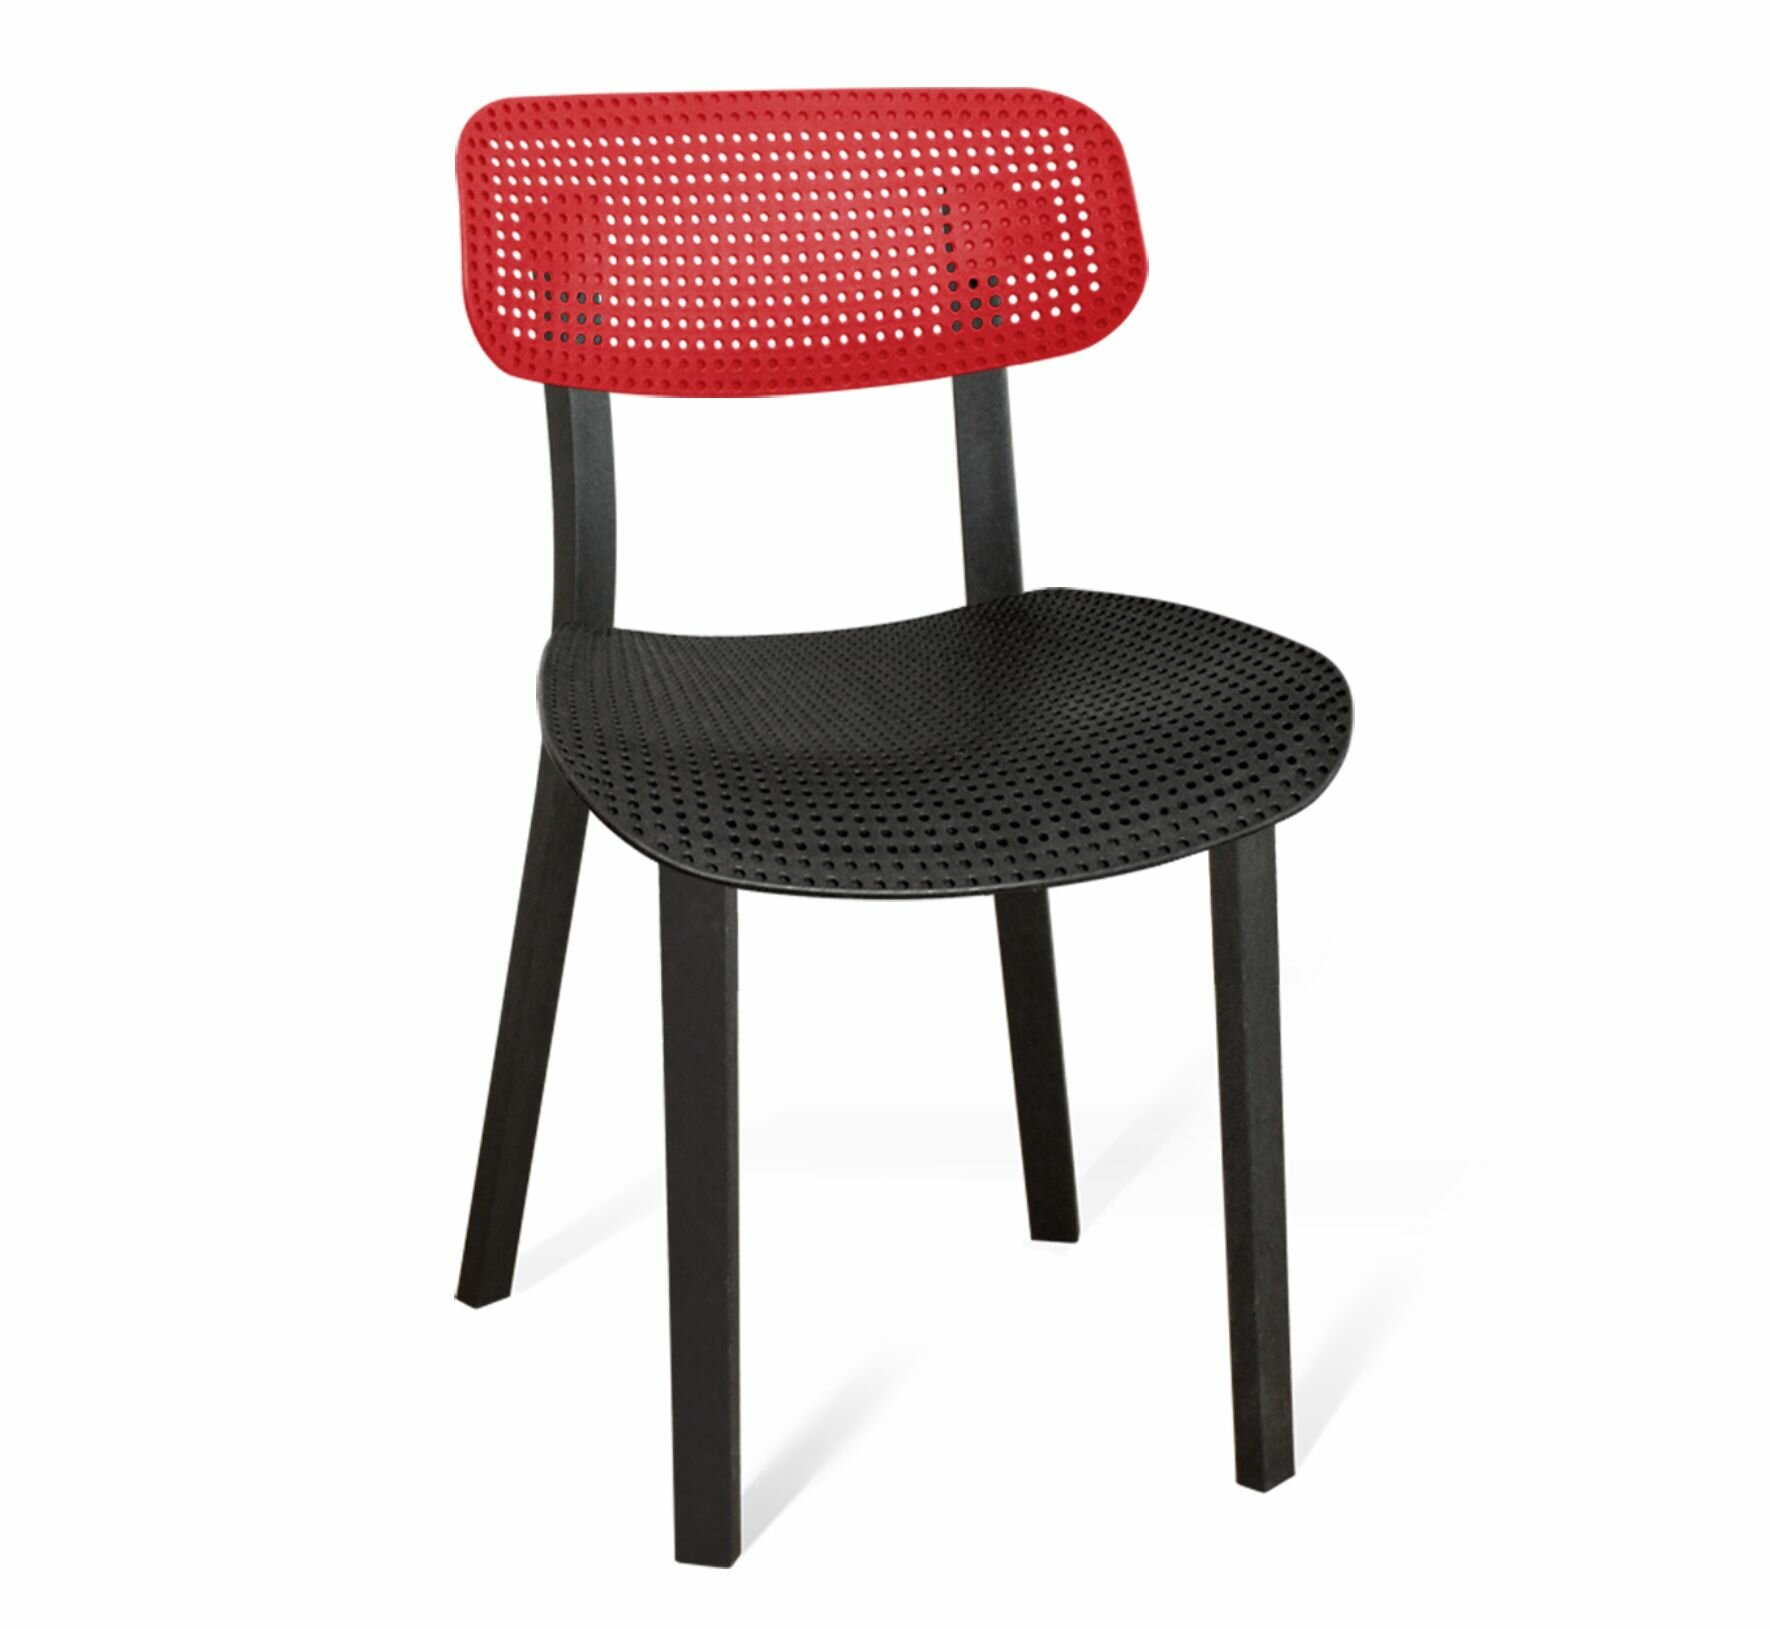 Кресло садовое Cтул пластиковый садовый для кафе для дачи и сада 465x51x79 см пластик черный/красный